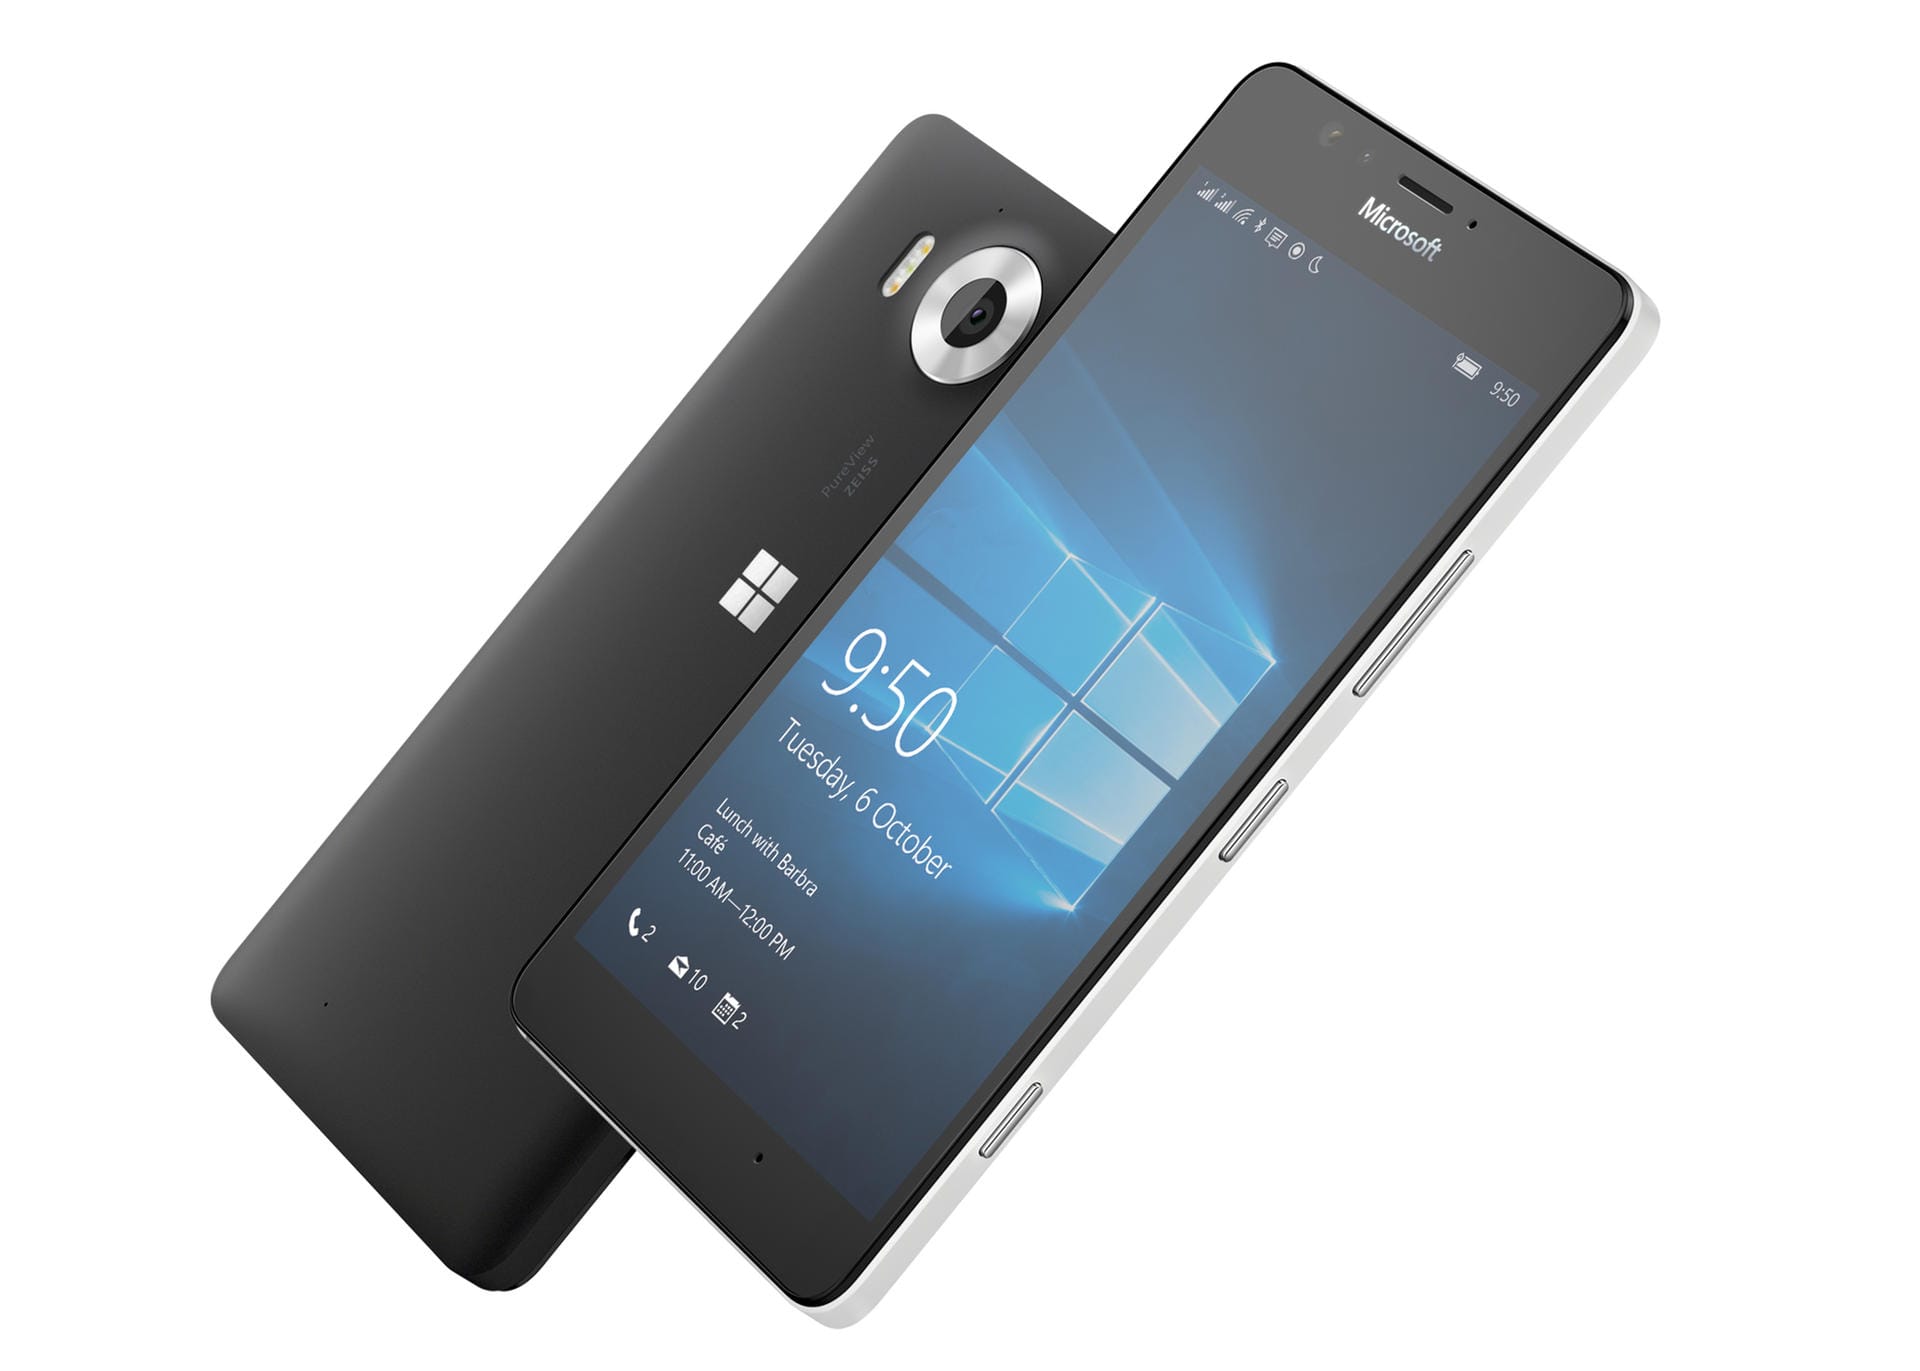 Top-Austattung und hochwertige Verarbeitung schützen nicht vor dem Preissturz. Bestes Beispiel hiefür ist das Microsoft Lumia 950.